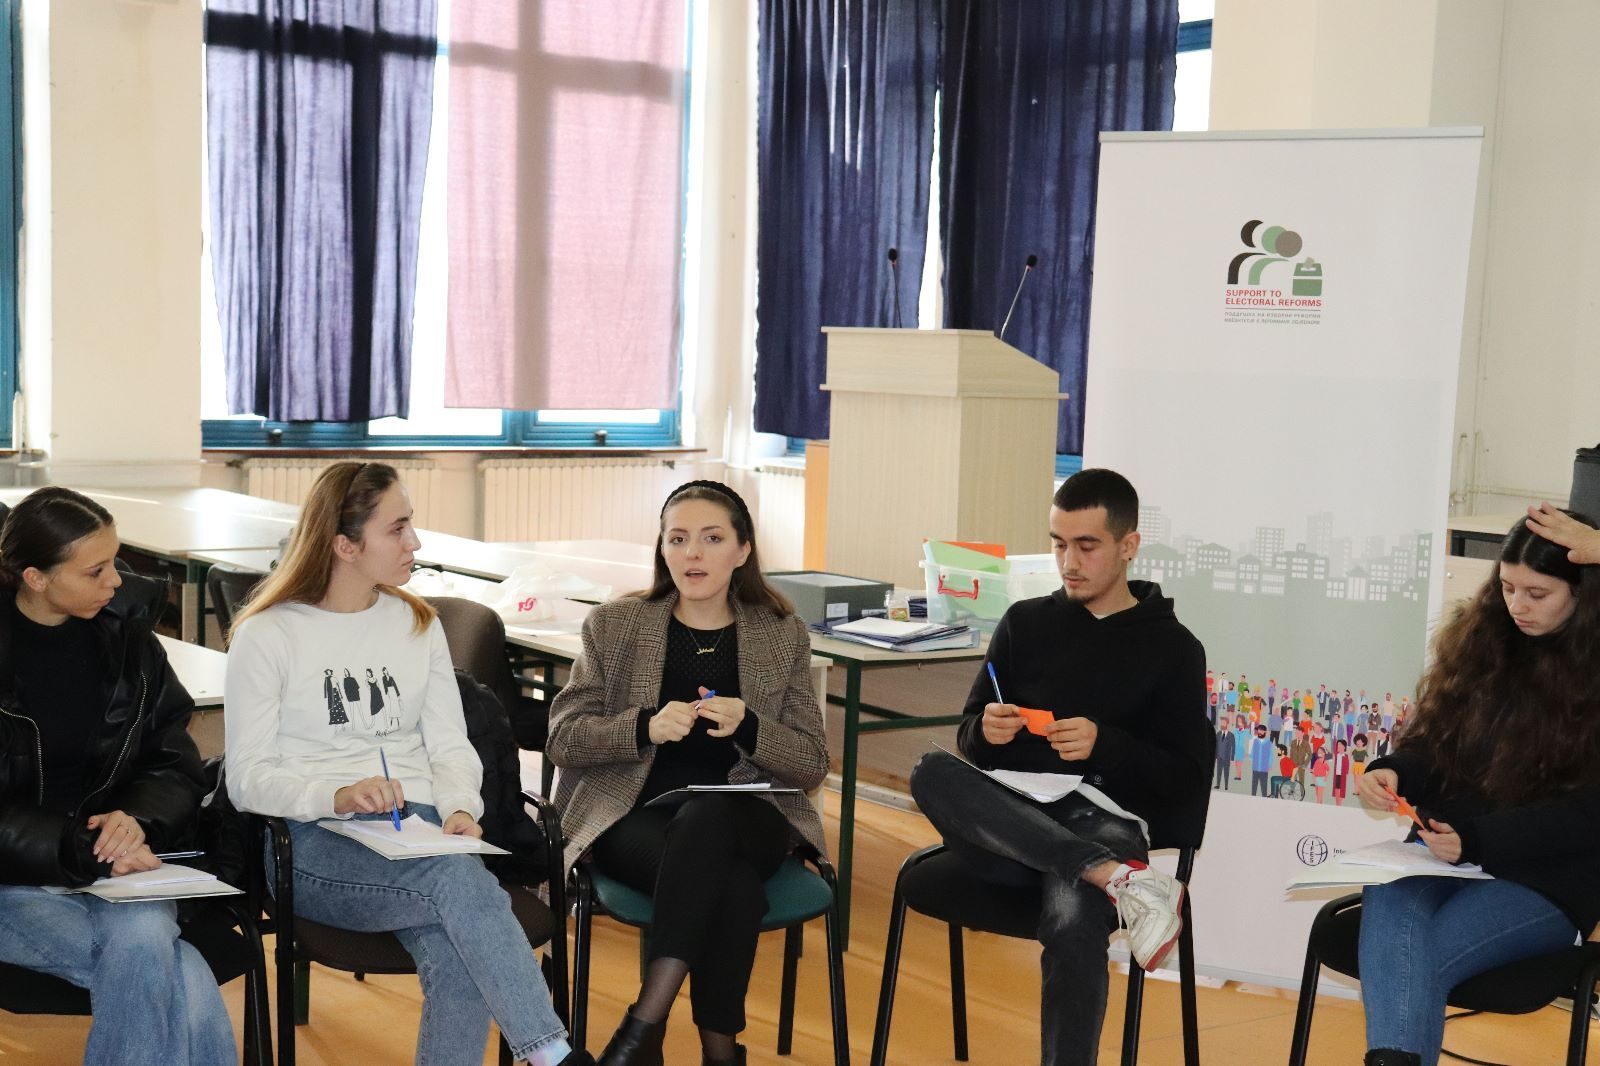 CED: Të rinjtë nga Tetova do të zbulojnë dhe raportojnë ndotësit e mjedisit jetësor